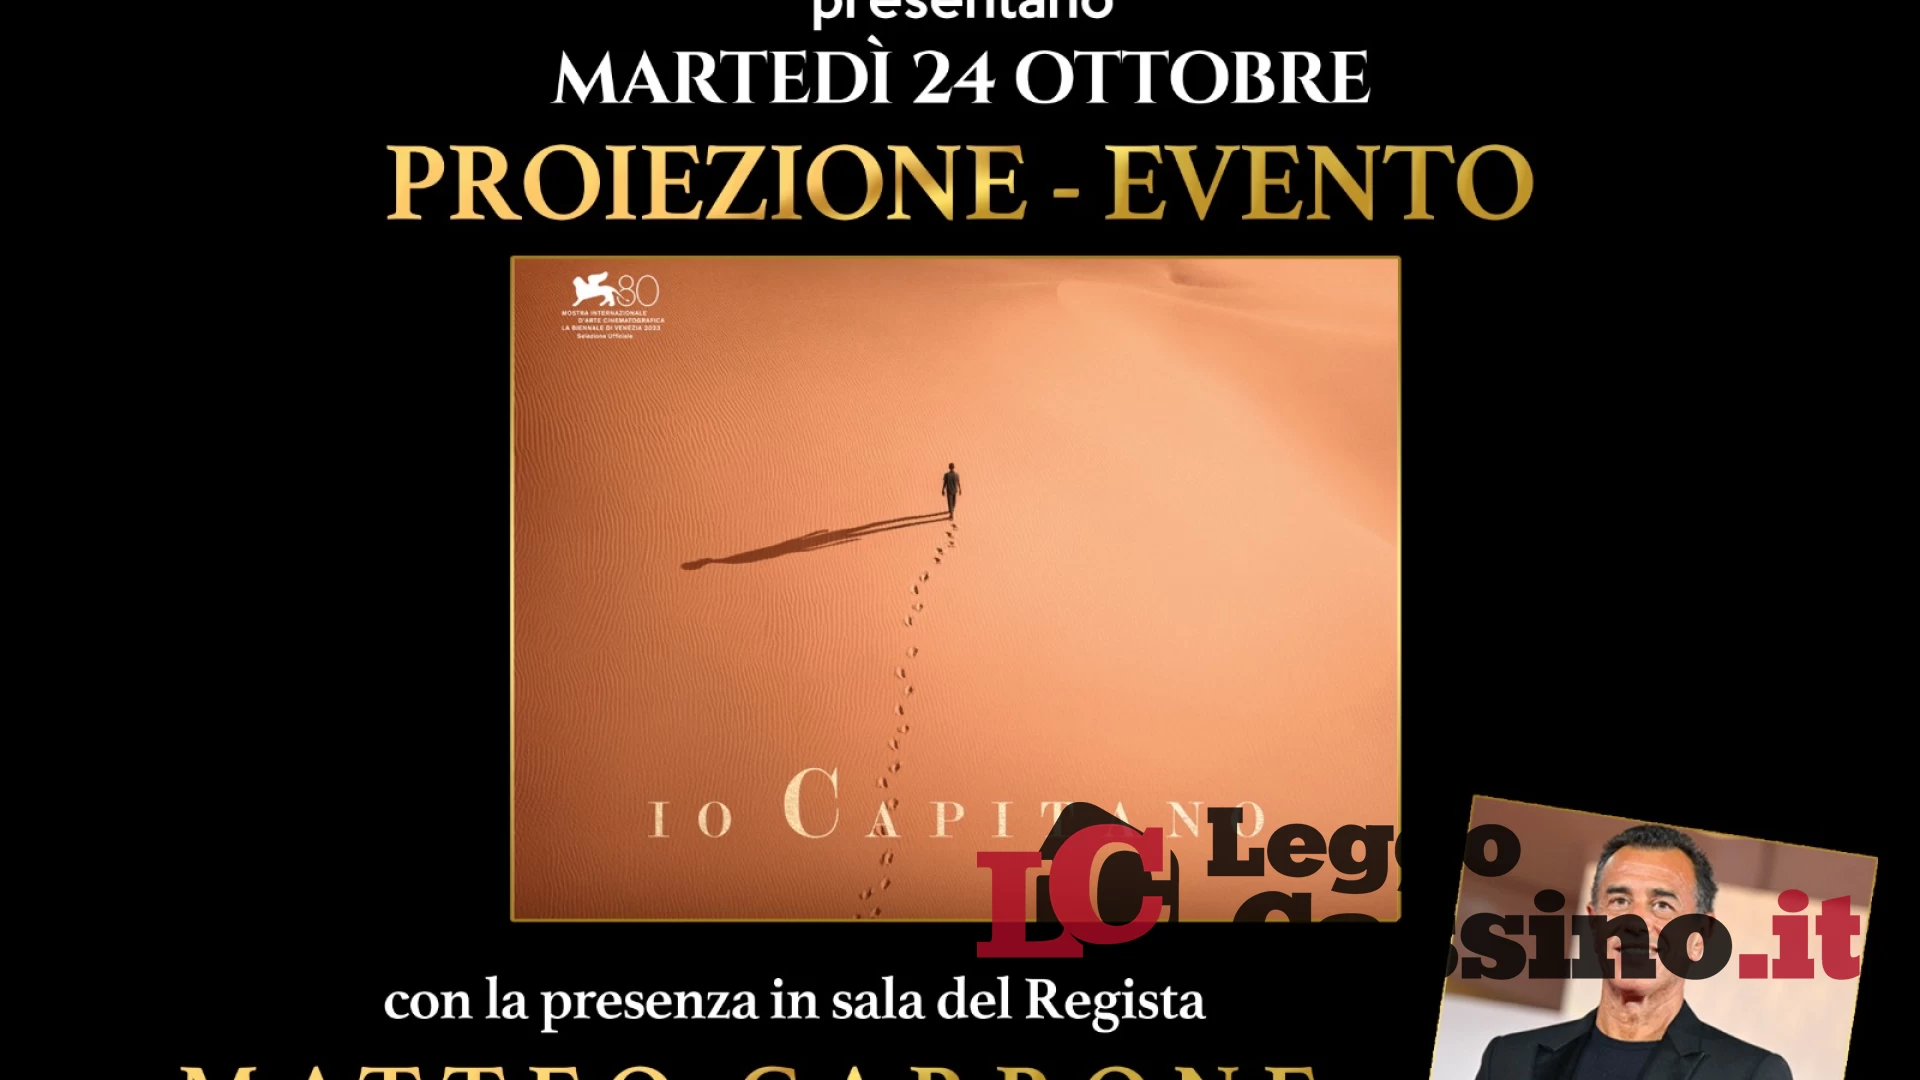 Al Teatro Manzoni di Cassino proiezione-evento di “Io Capitano” alla presenza del regista Matteo Garrone